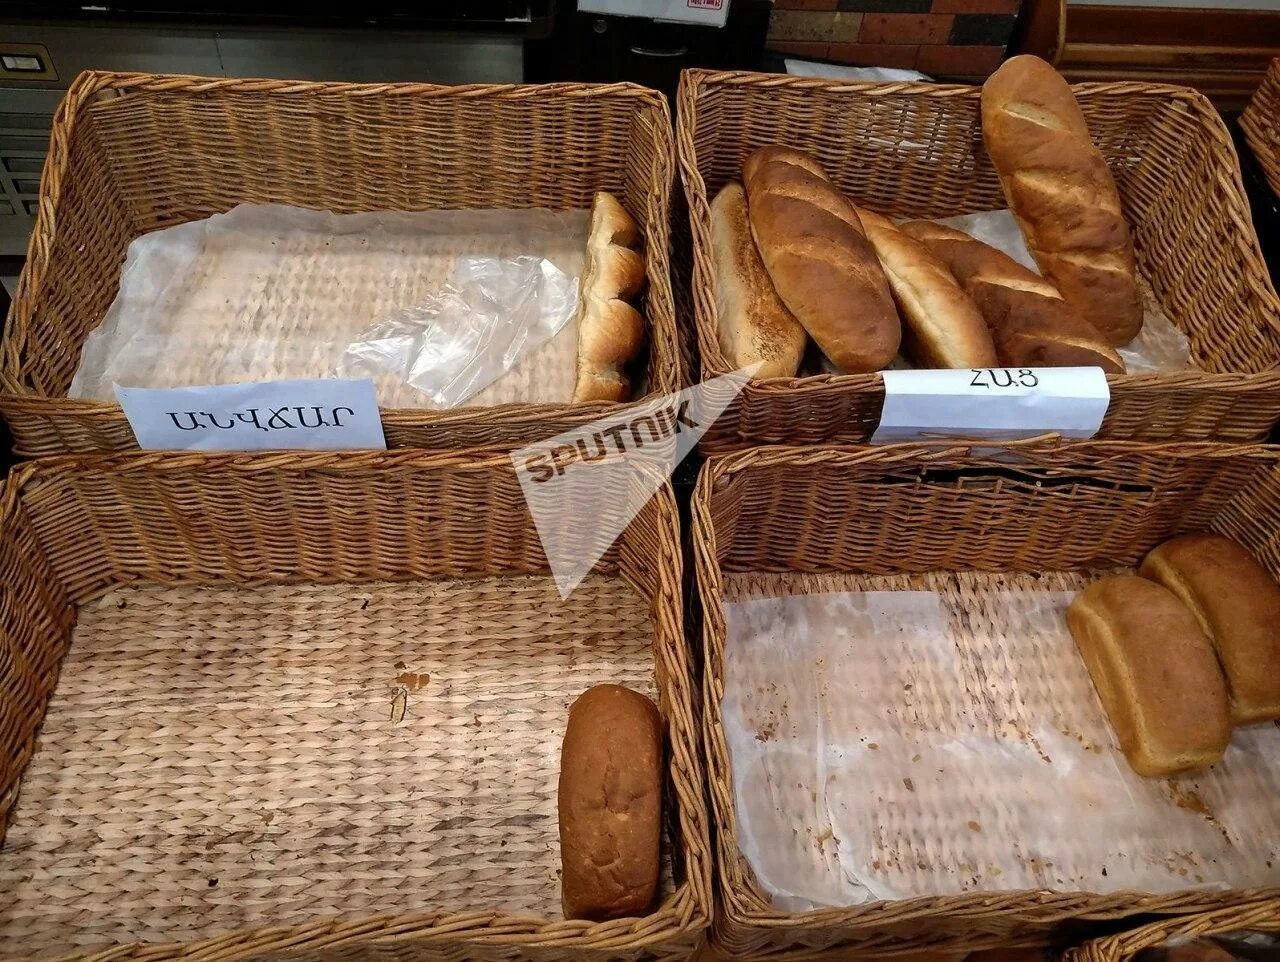 Хлеб в магазине. Ящик для хлеба. Корзина для хлеба. Хлеб из магазина батон. Сонник видеть хлеб